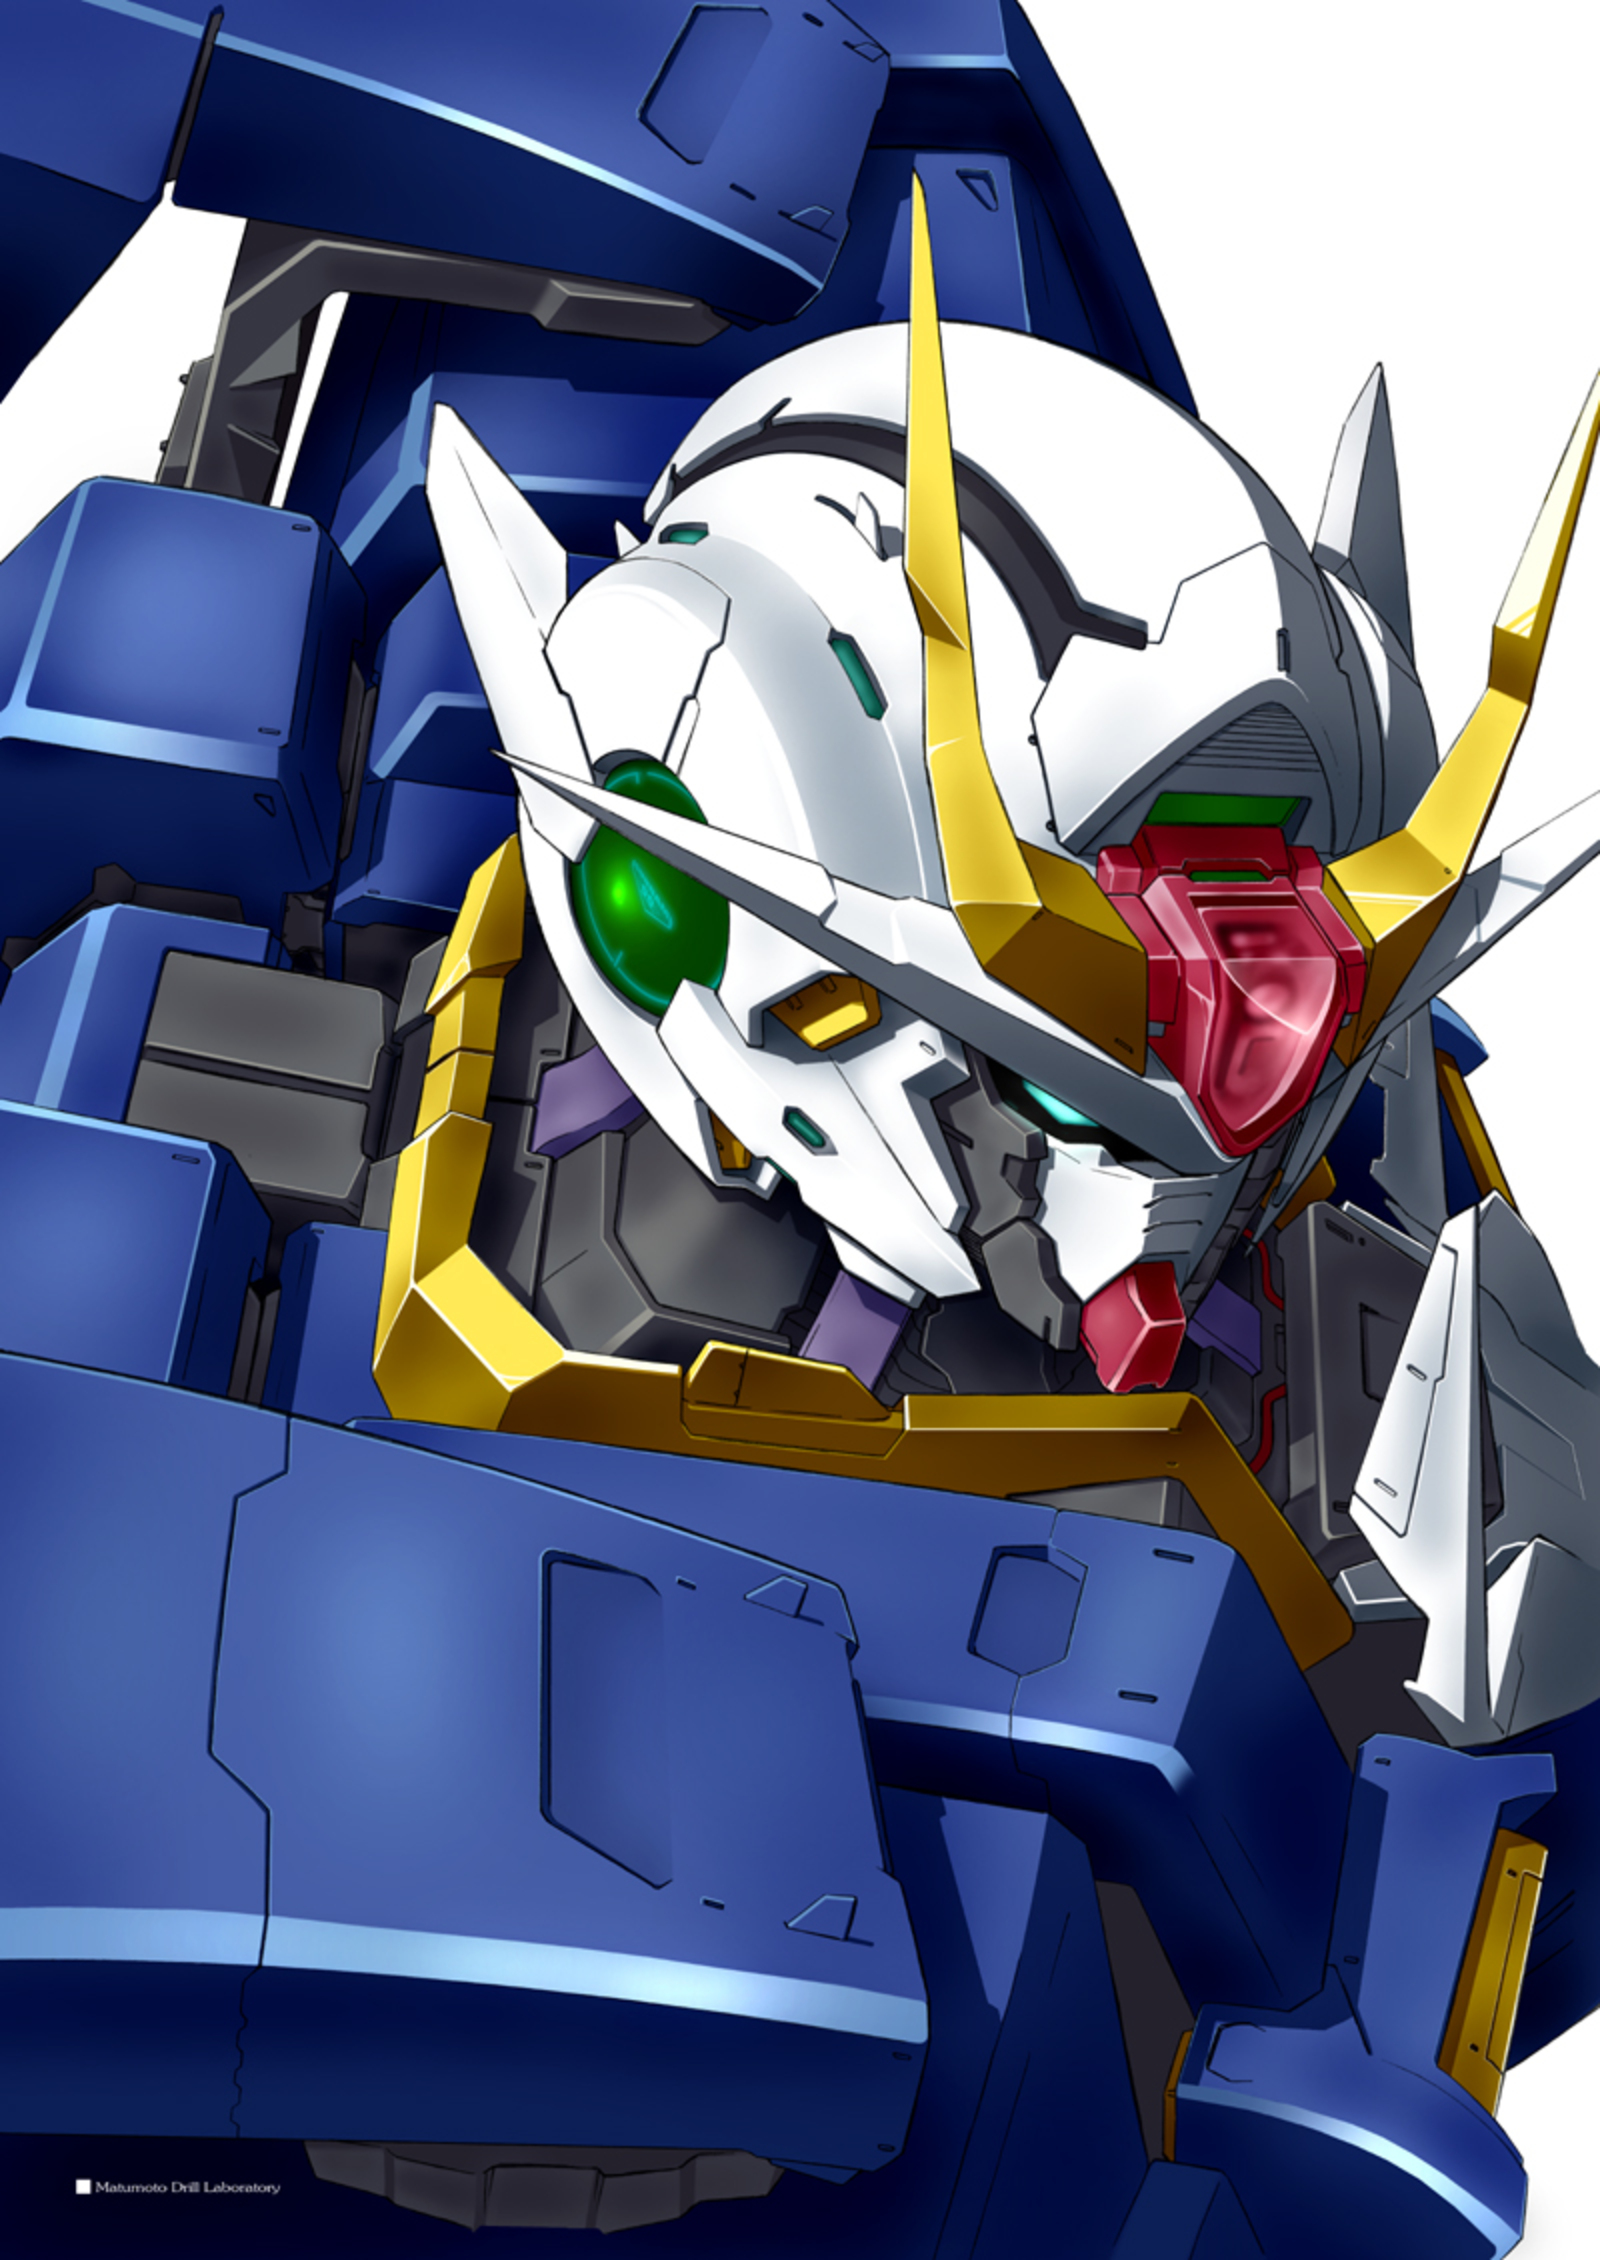 00 Gundam Mobile Suit Gundam 00 Anime Mechs Gundam Super Robot Wars Artwork Digital Art Fan Art 1600x2260